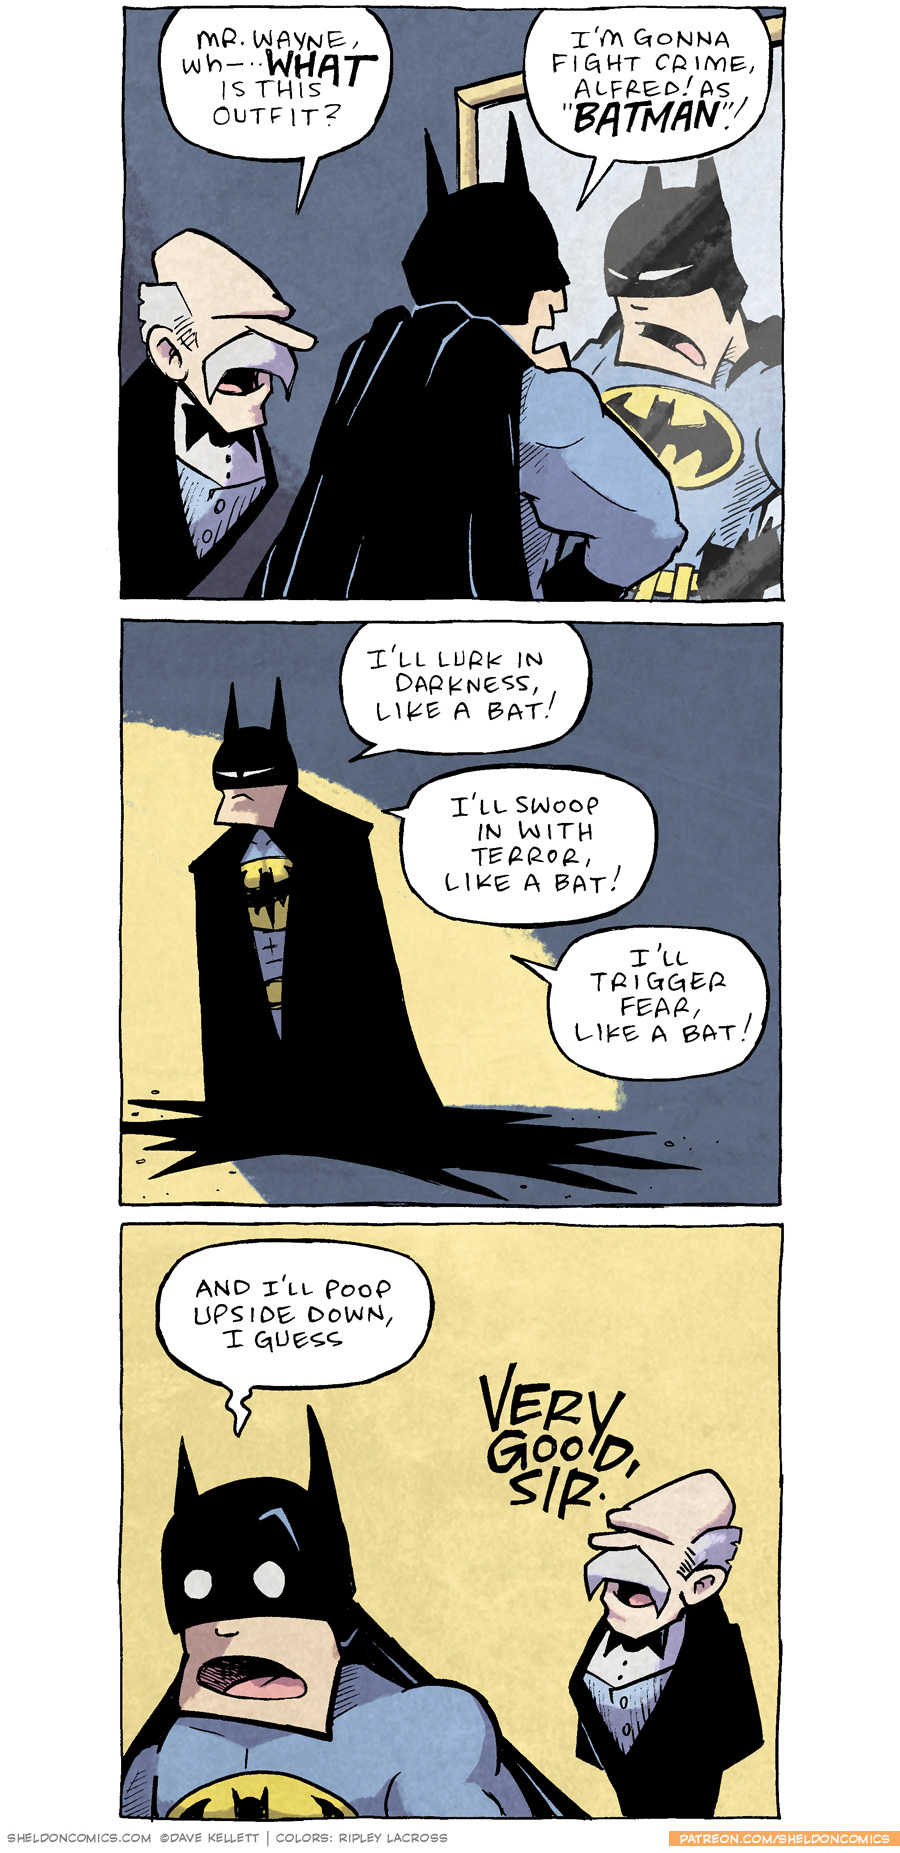 Like a Bat! - Sheldon® Comic Strip